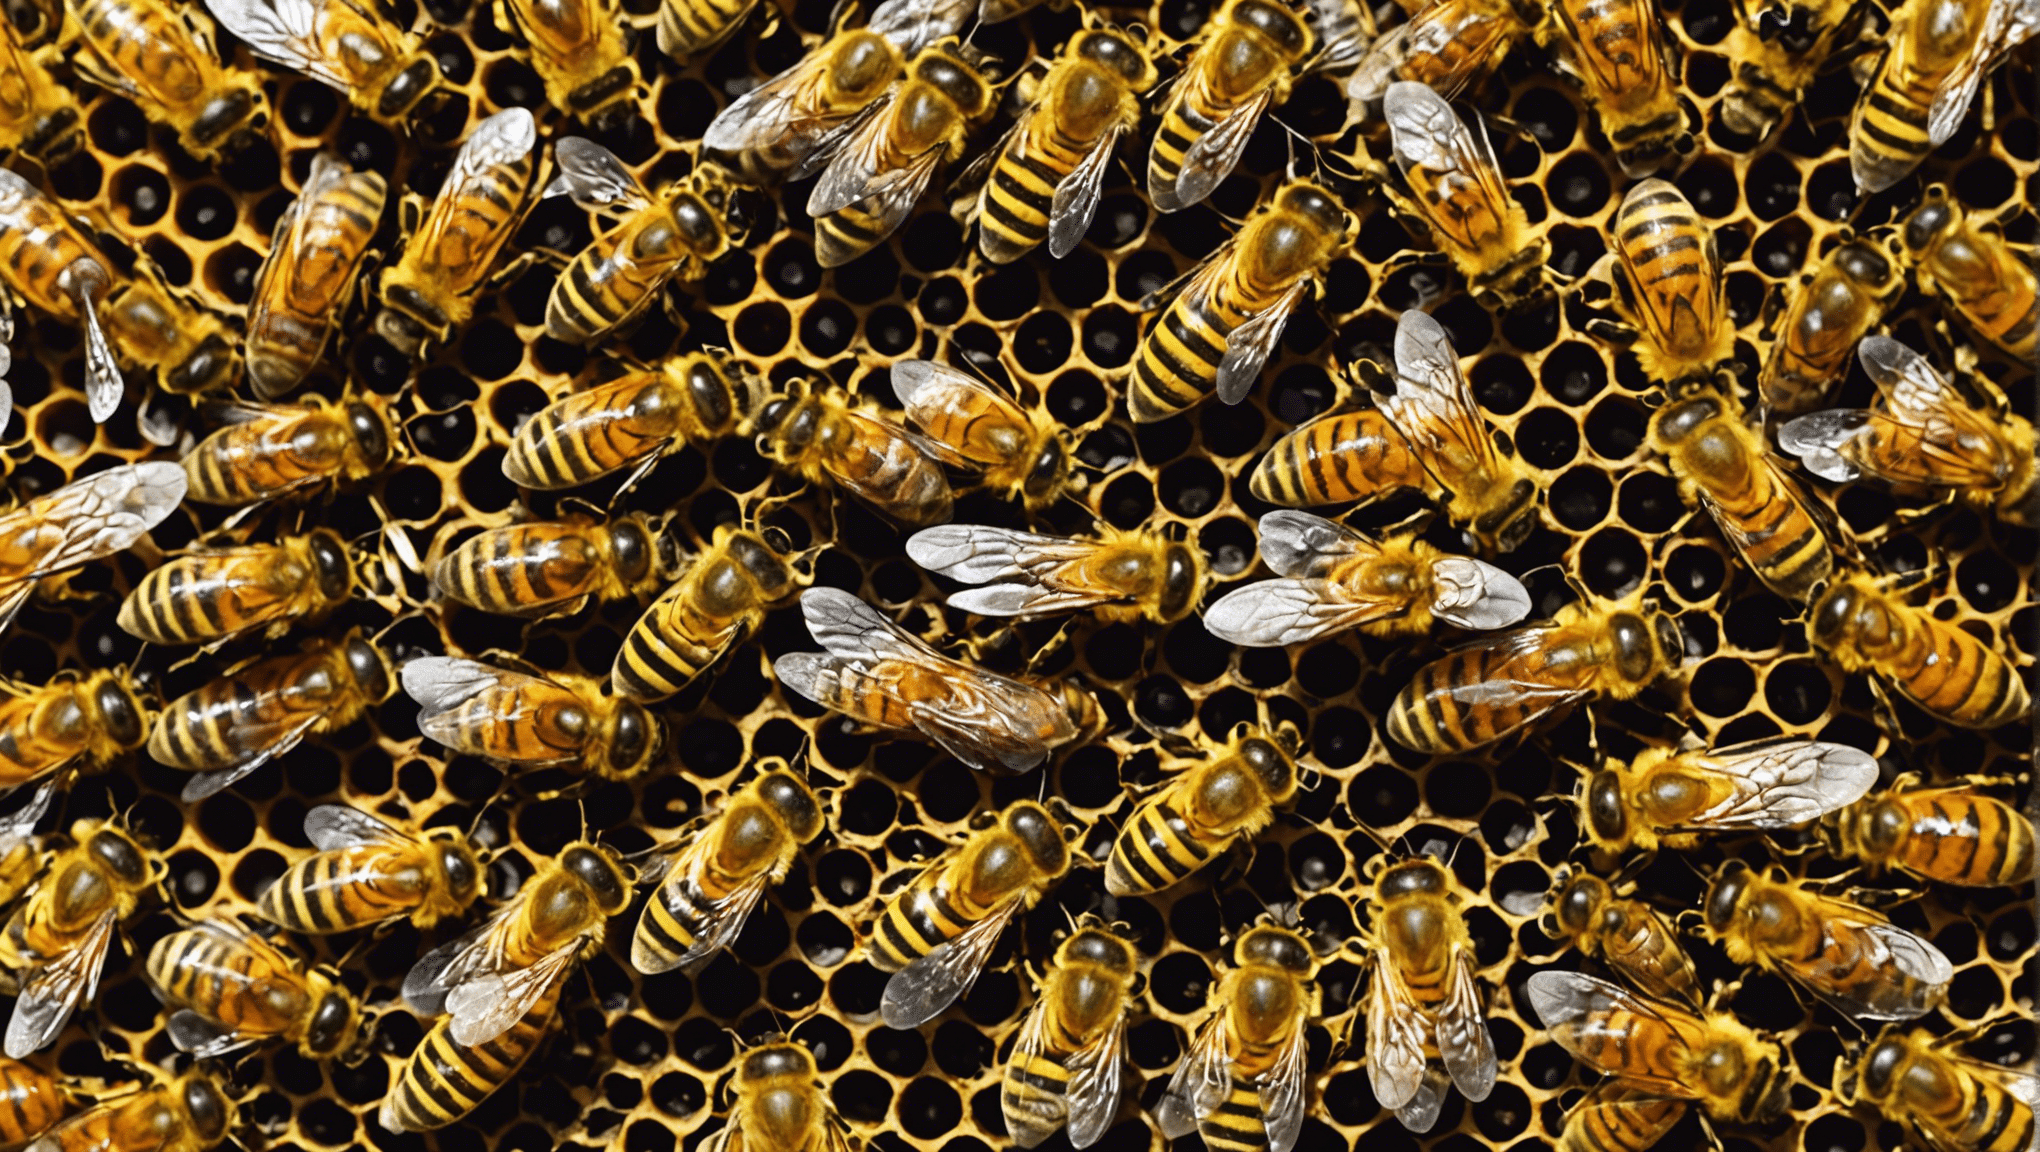 découvrez comment les abeilles butineuses préservent leurs mystères et révèlent leurs secrets dans cet article fascinant.